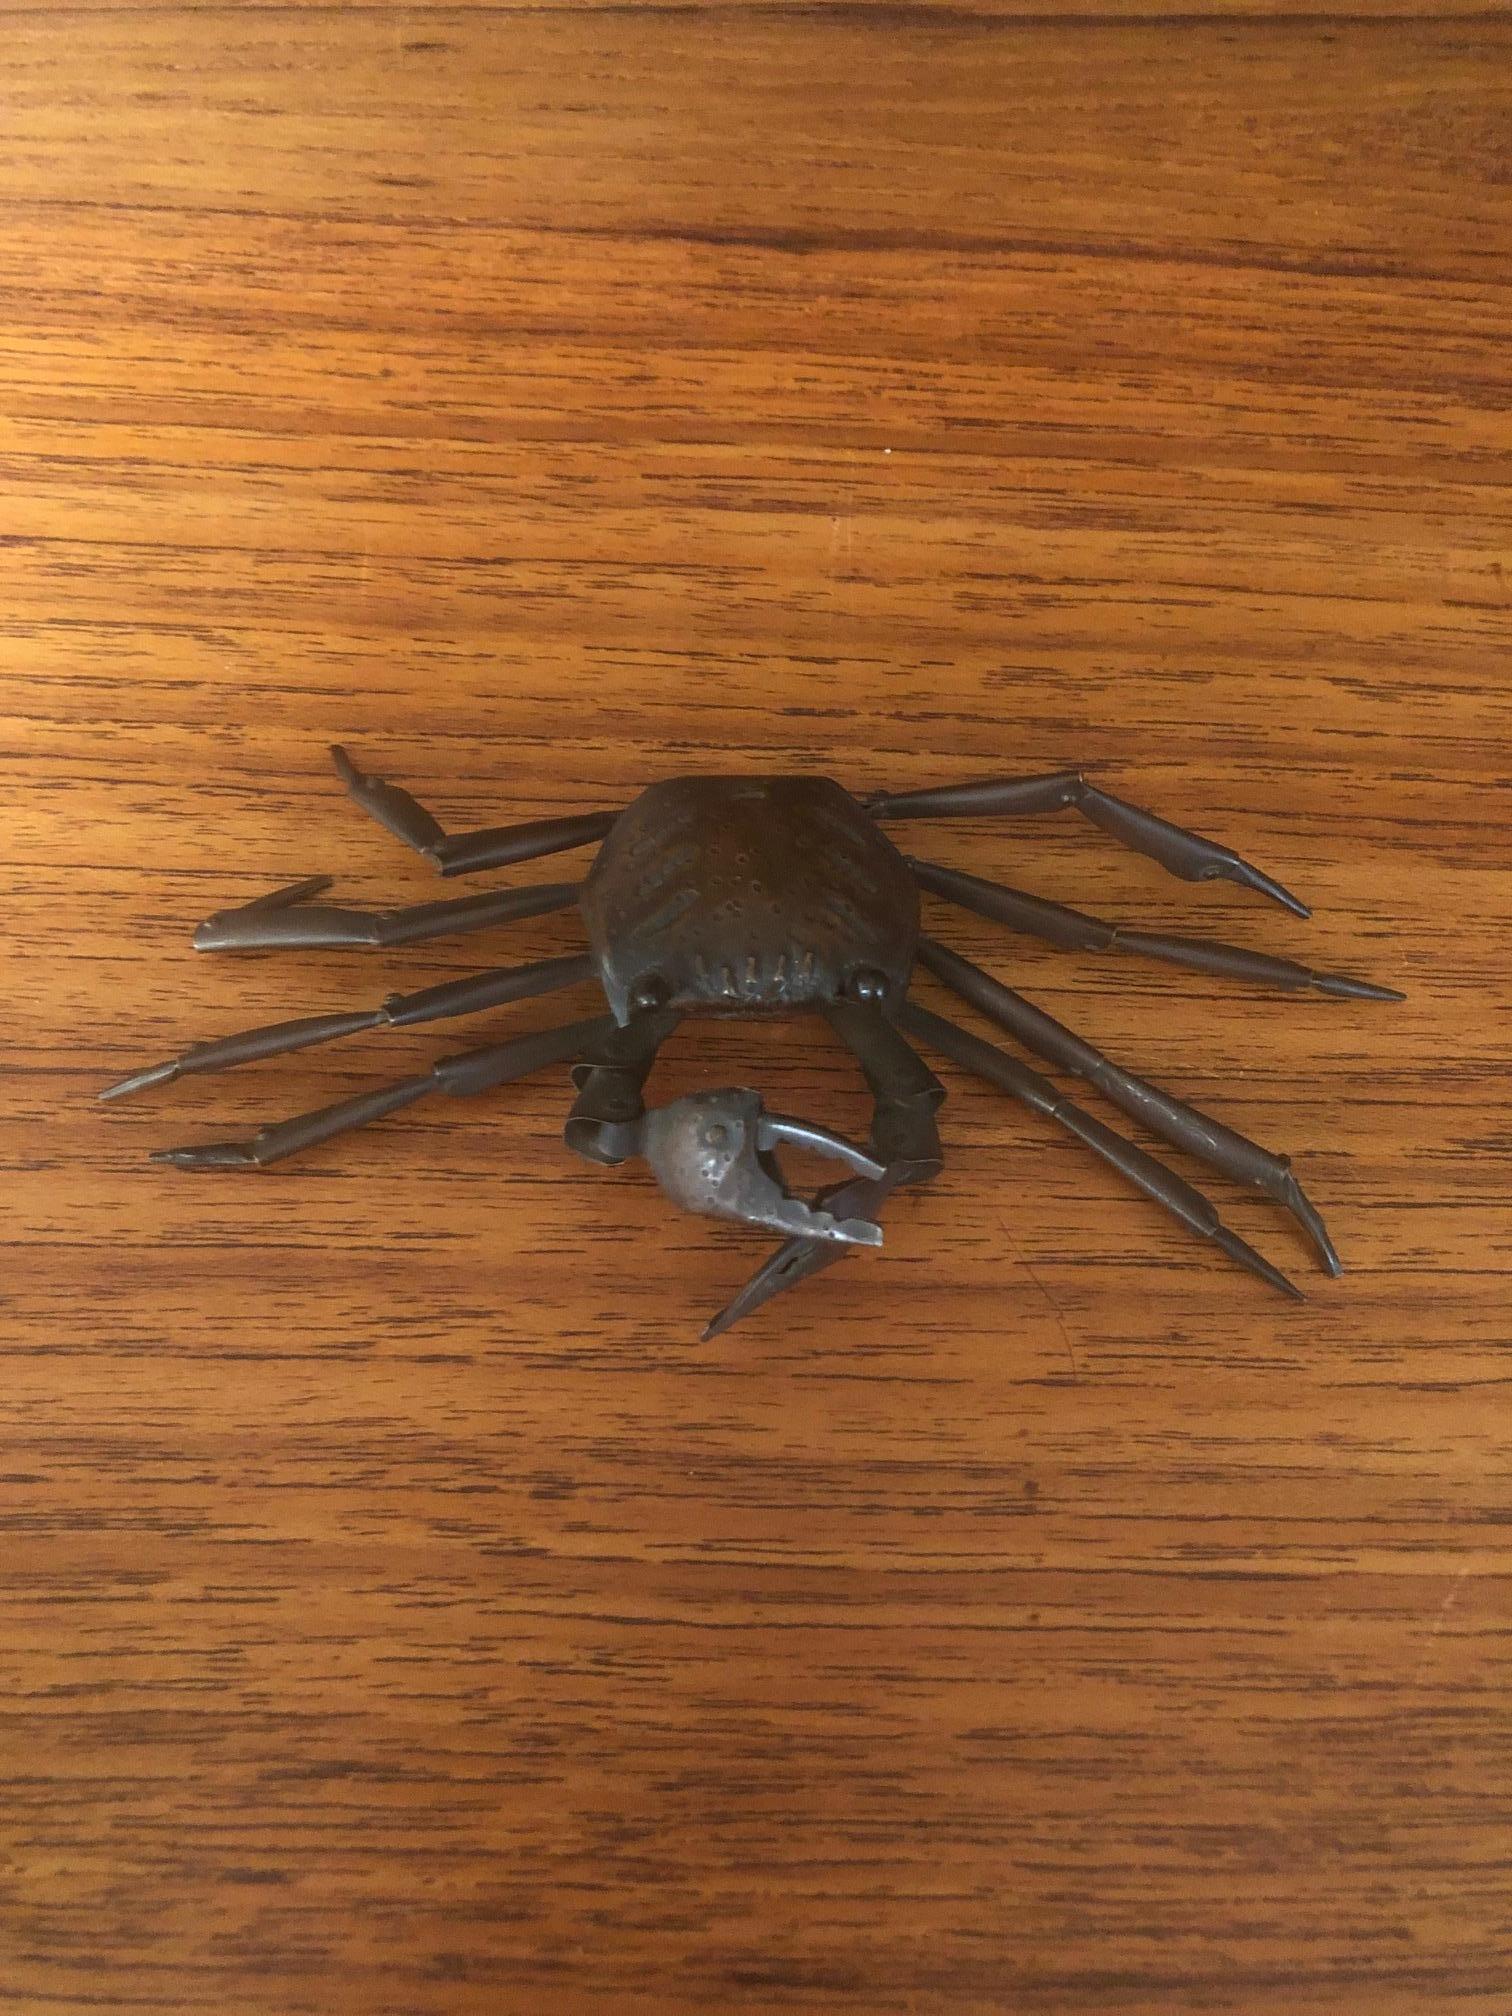 megarachne spider size